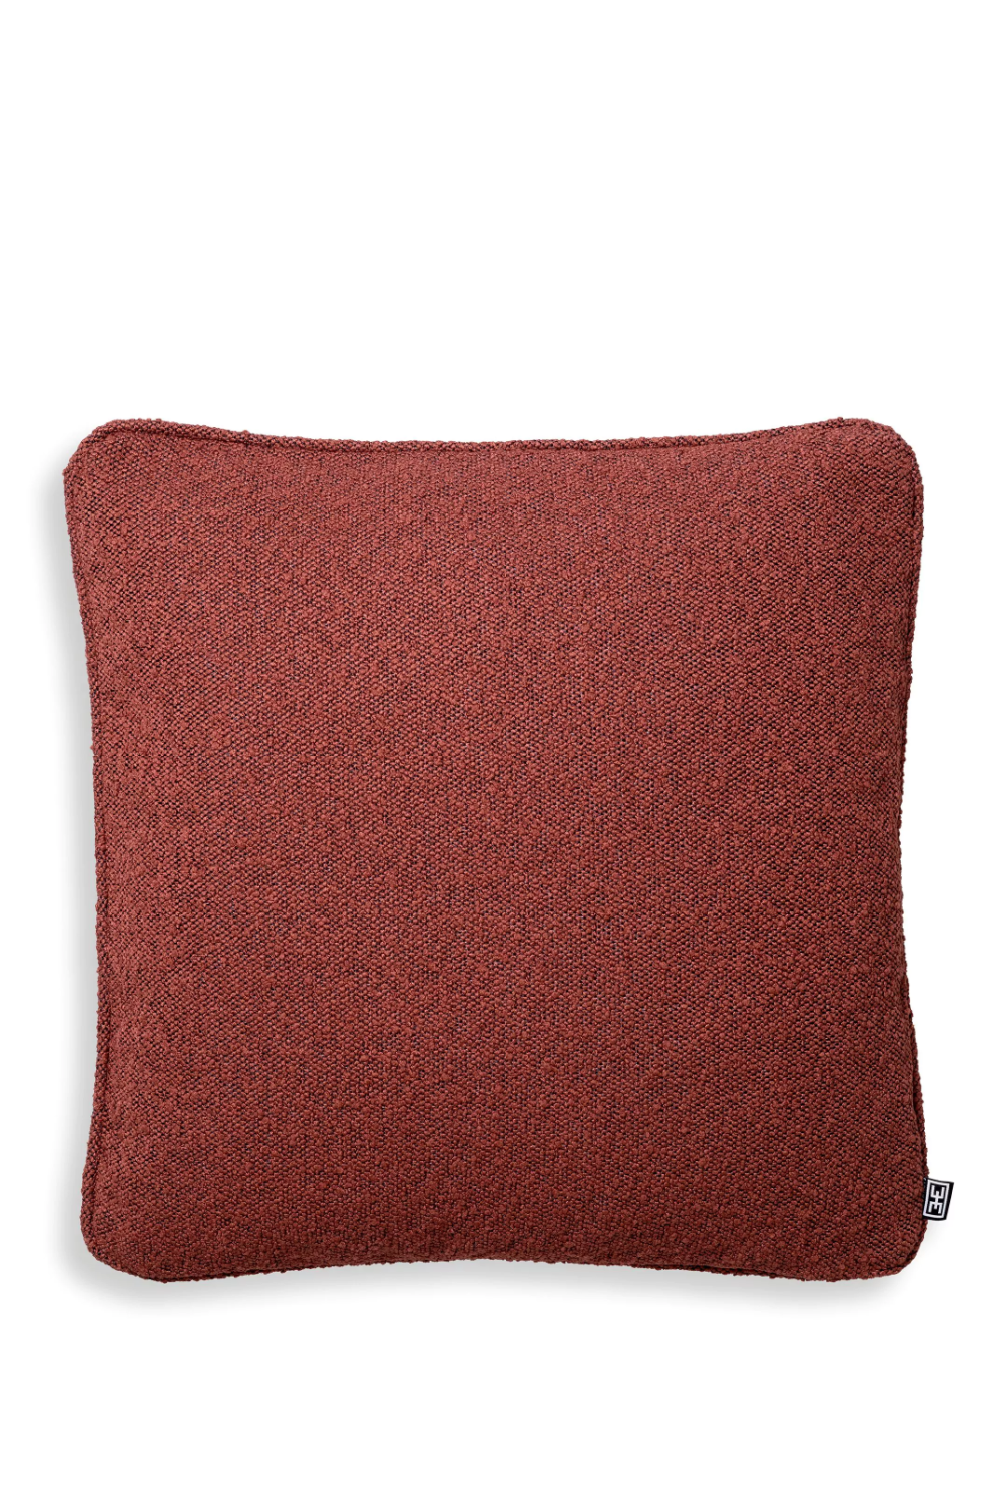 Red Bouclé Throw Pillow | Eichholtz | Oroa.com